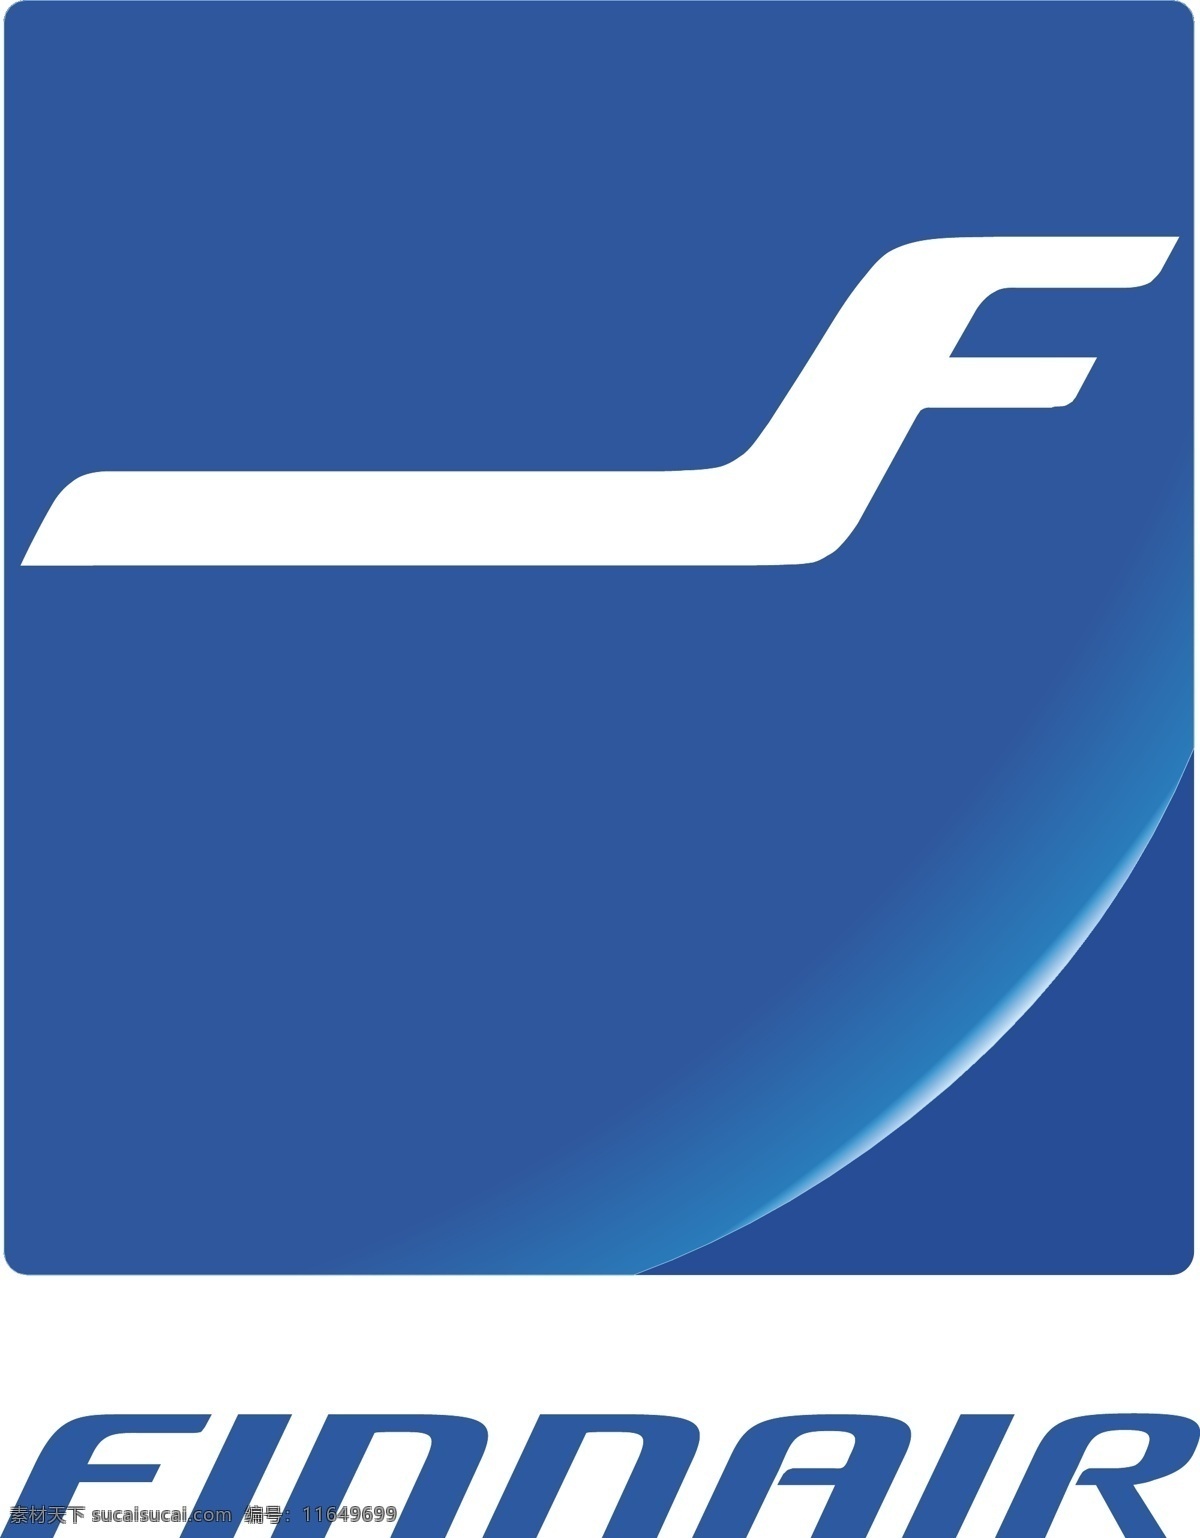 芬兰 航空 air 颂 免费 空气 标志 自由 psd源文件 logo设计